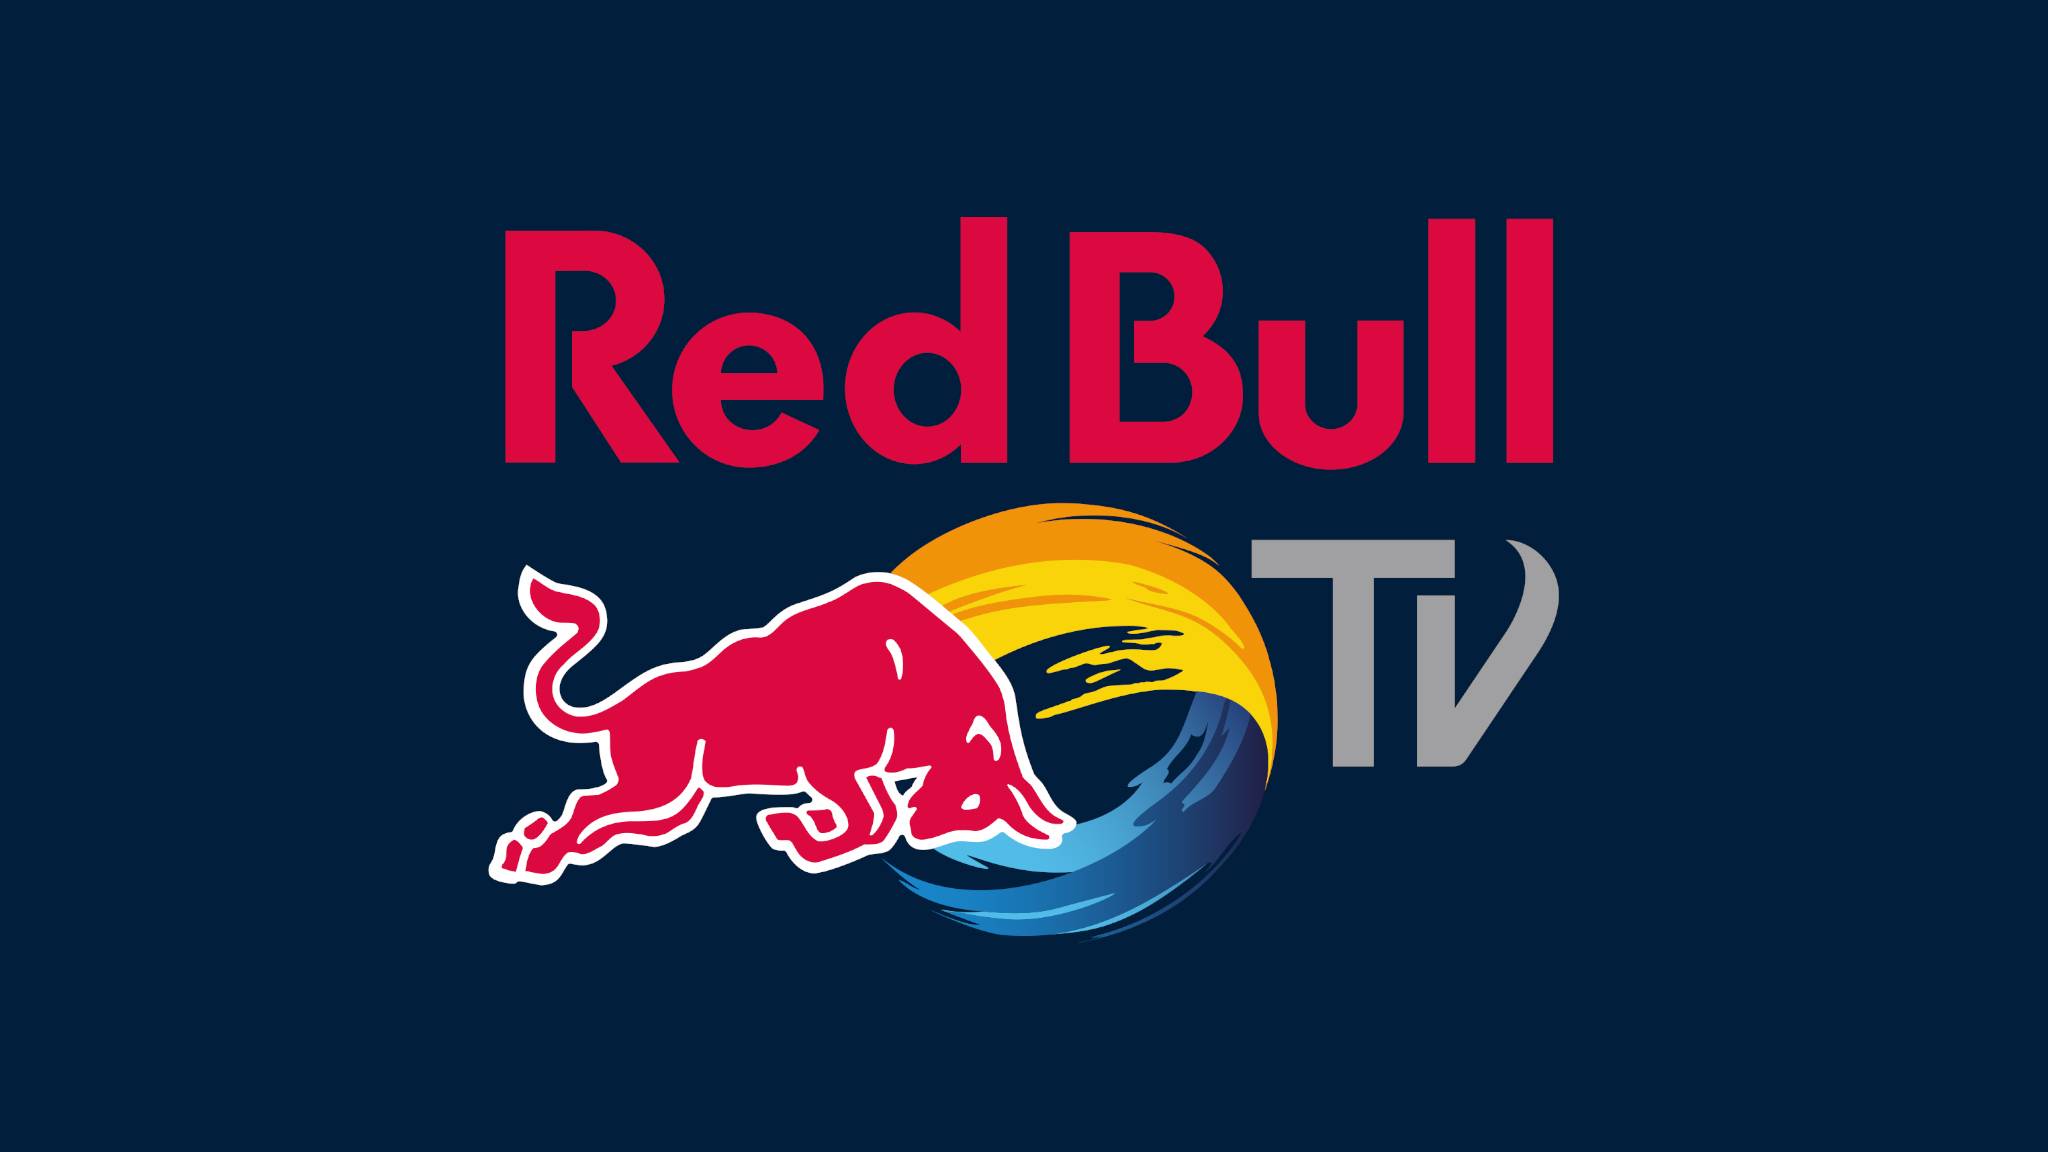 Red Bull TV